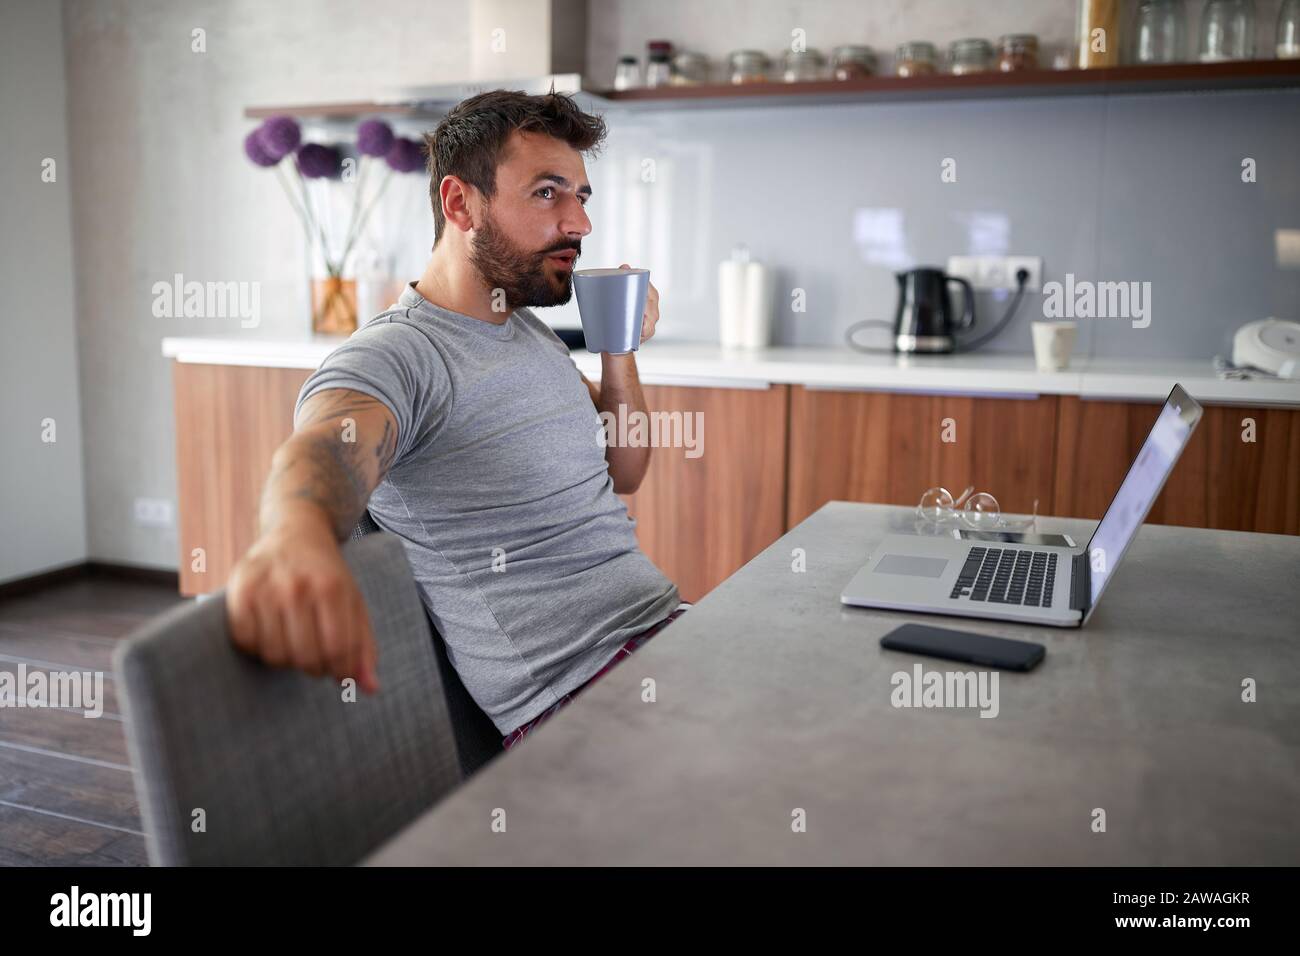 Junger Erwachsener mit Bartsitzend und trinkendem Kaffee vor dem Laptop auf dem Tisch. Moderner Lebensstil, entspanntes, geschäftliches Konzept Stockfoto